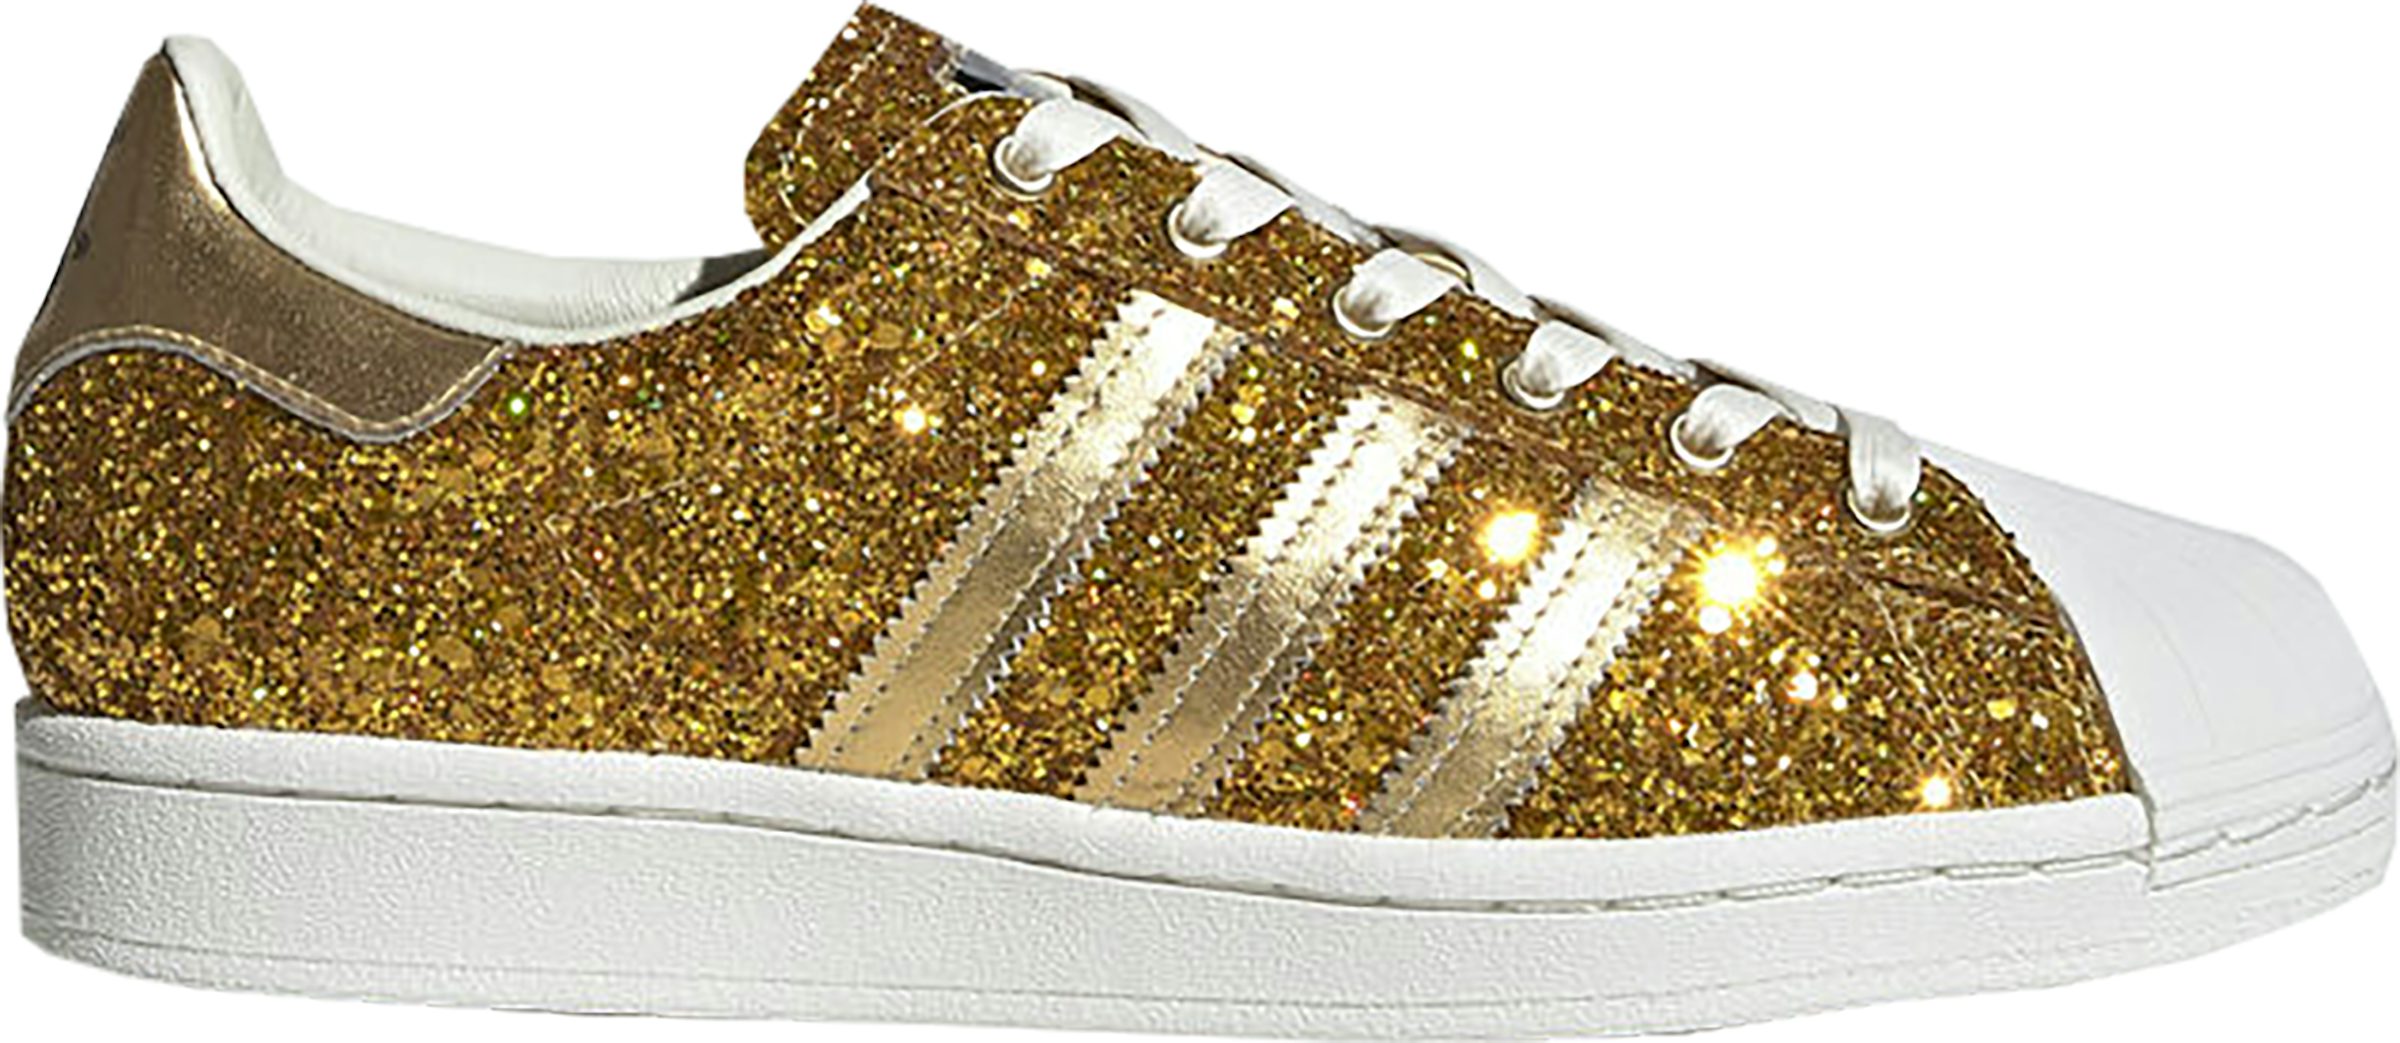 adidas Superstar Gold Metallic (Women's)